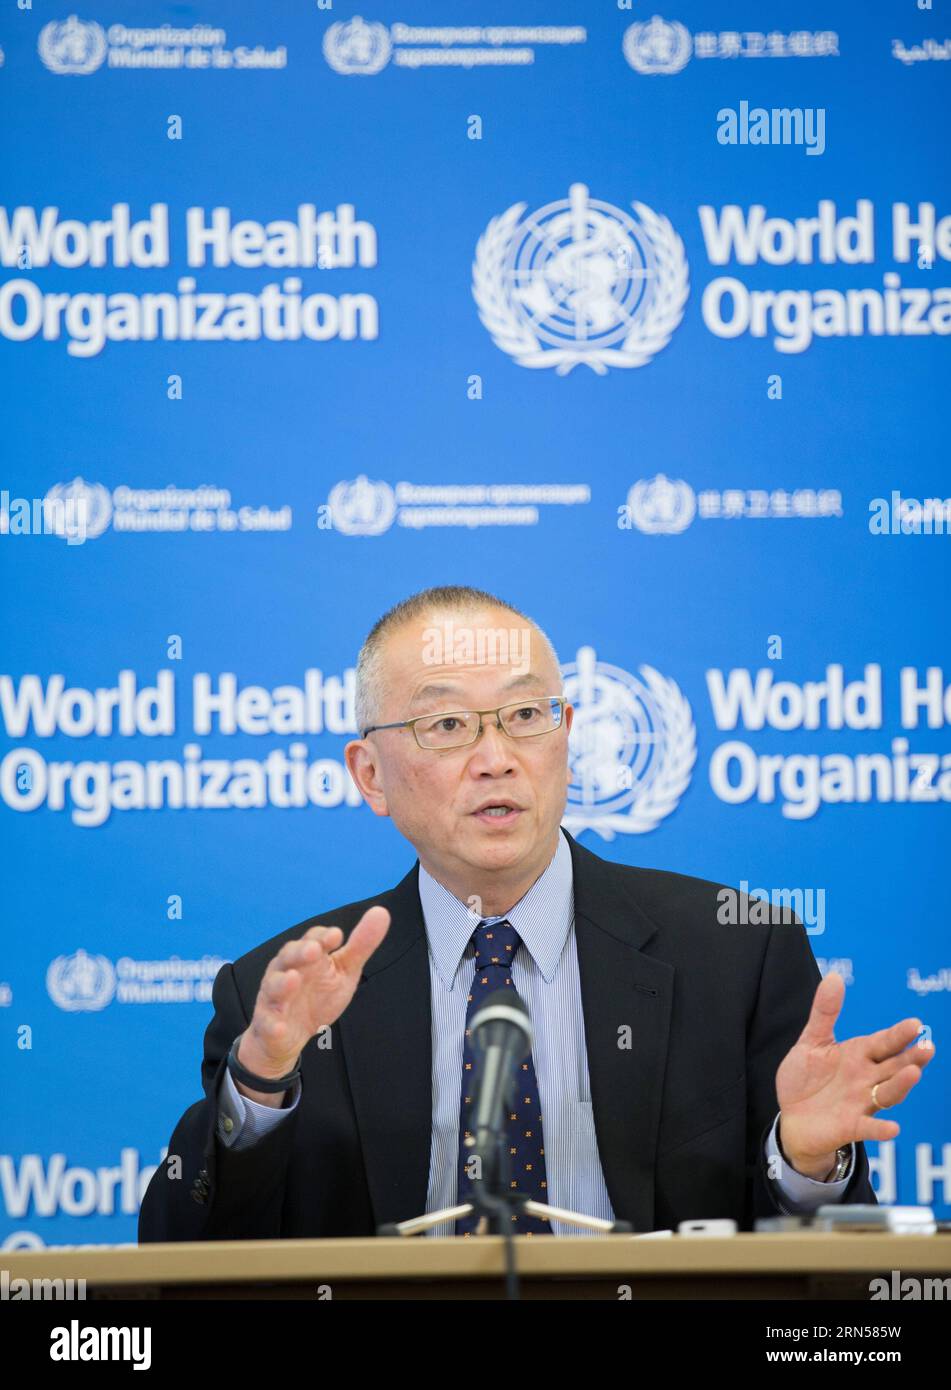 (150617)-- GENÈVE, 17 juin 2015-- Keiji Fukuda, sous-directeur général pour la sécurité sanitaire de l'Organisation mondiale de la Santé (OMS), prend la parole lors d'une conférence de presse à Genève, Suisse, le 17 juin 2015. L'Organisation mondiale de la Santé a déclaré mercredi que l'épidémie de mers en Corée du Sud ne constitue pas actuellement une urgence de santé publique de préoccupation internationale. )(azp) SUISSE-GENÈVE-OMS-mers Xuxjinquan PUBLICATIONxNOTxINxCHN Genève juin 17 2015 Keiji Fukuda Directeur général adjoint pour la sécurité sanitaire de l'Organisation mondiale de la Santé qui prend la parole lors d'une conférence de presse à Genève SW Banque D'Images